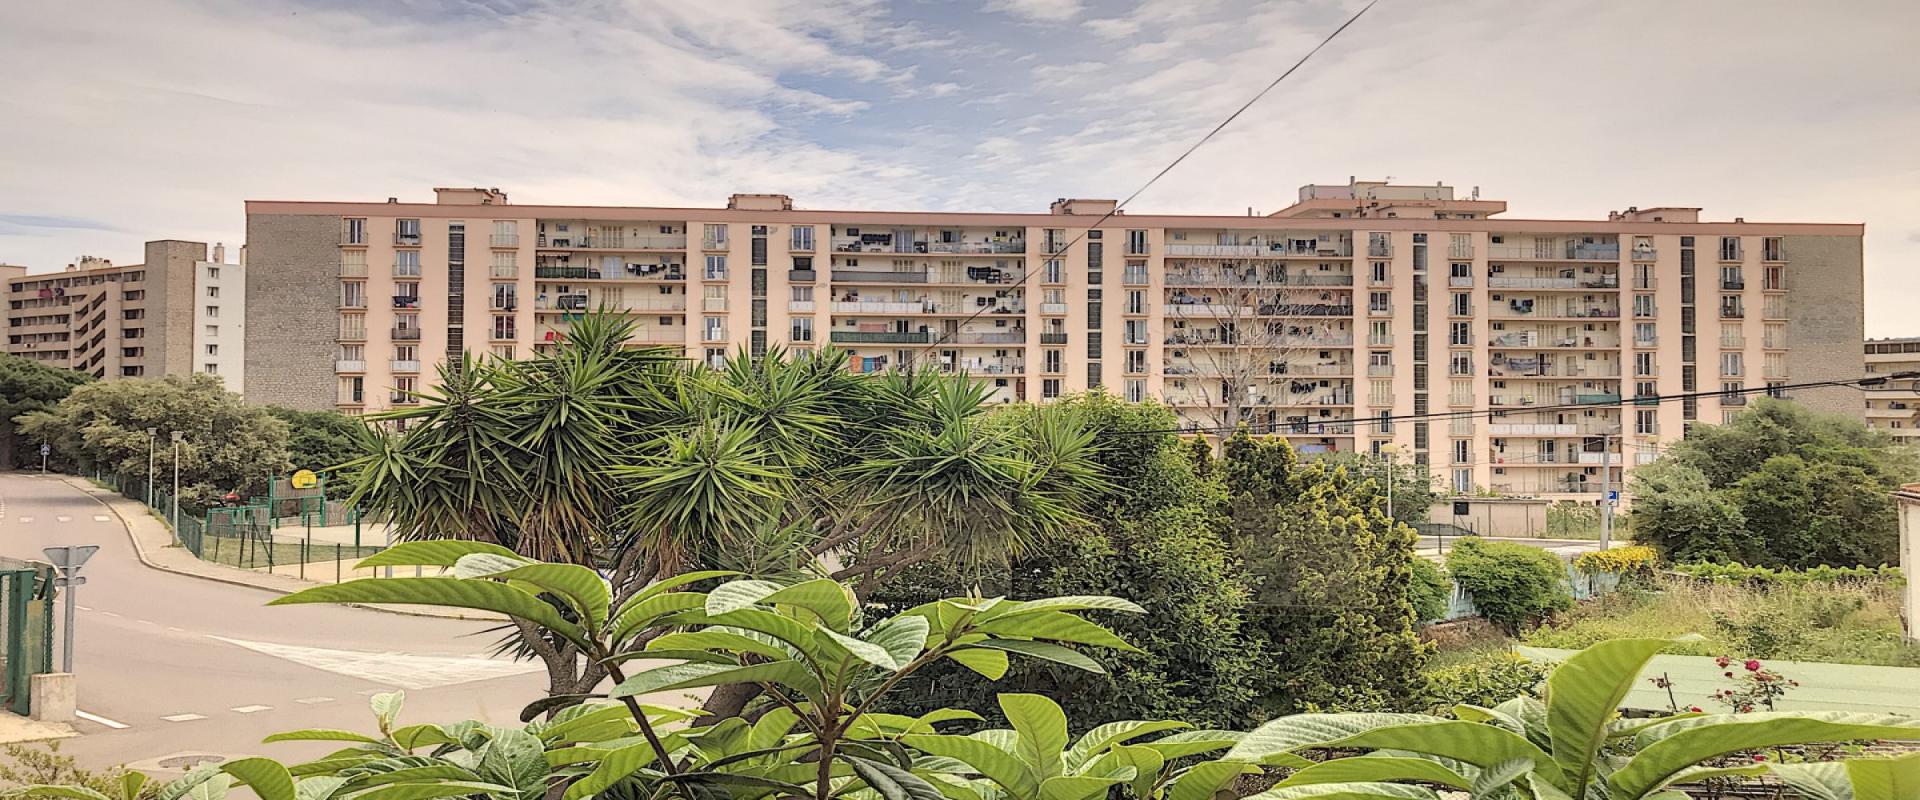 En Corse, à Ajaccio, un appartement de type F4 de 87 m² secteur du Loretto